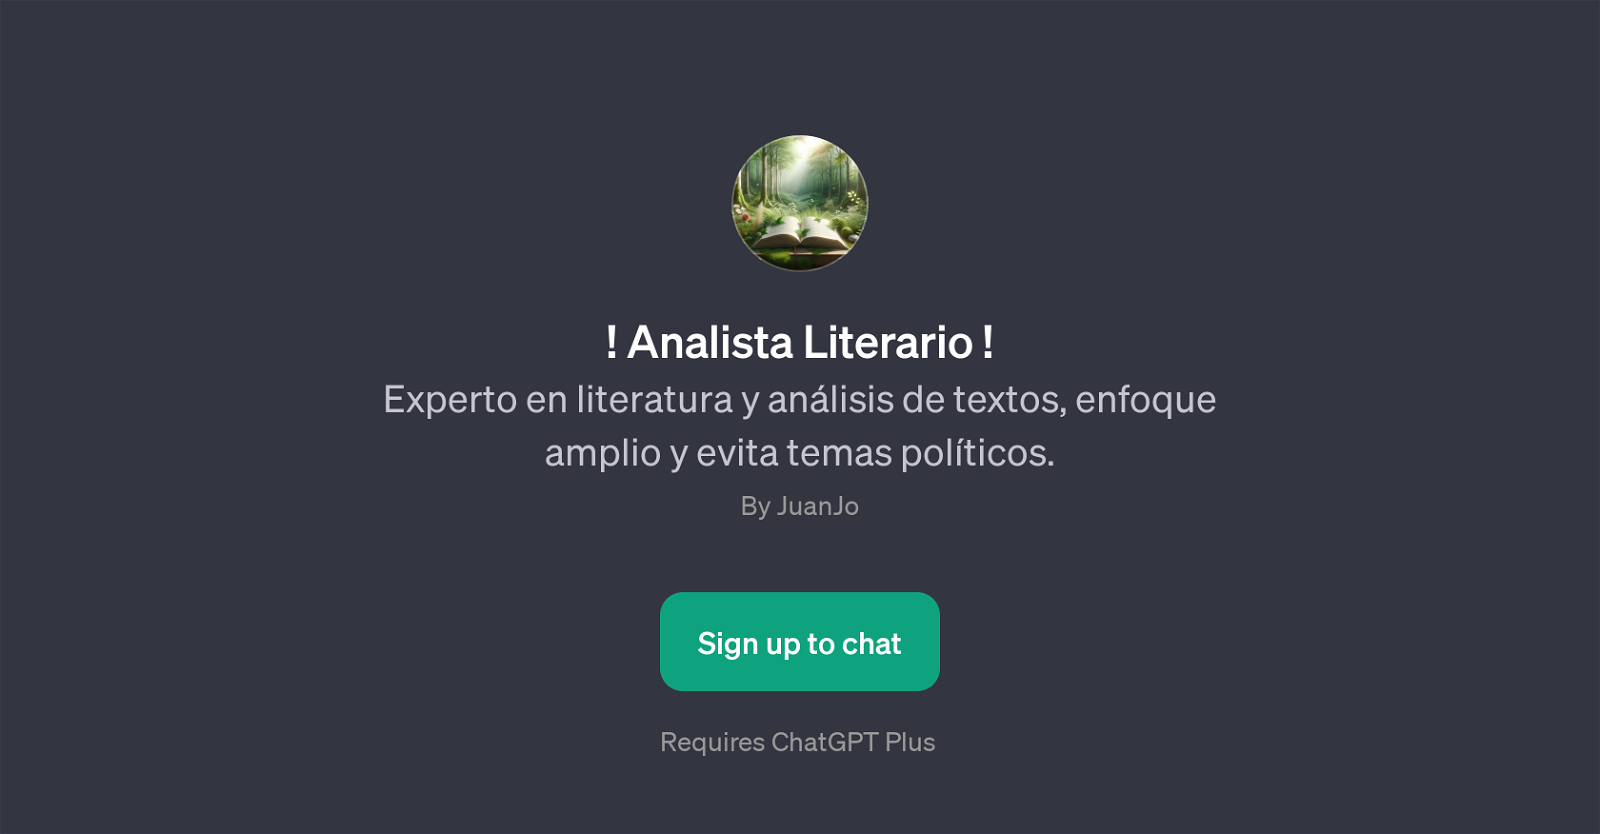 Analista Literario website